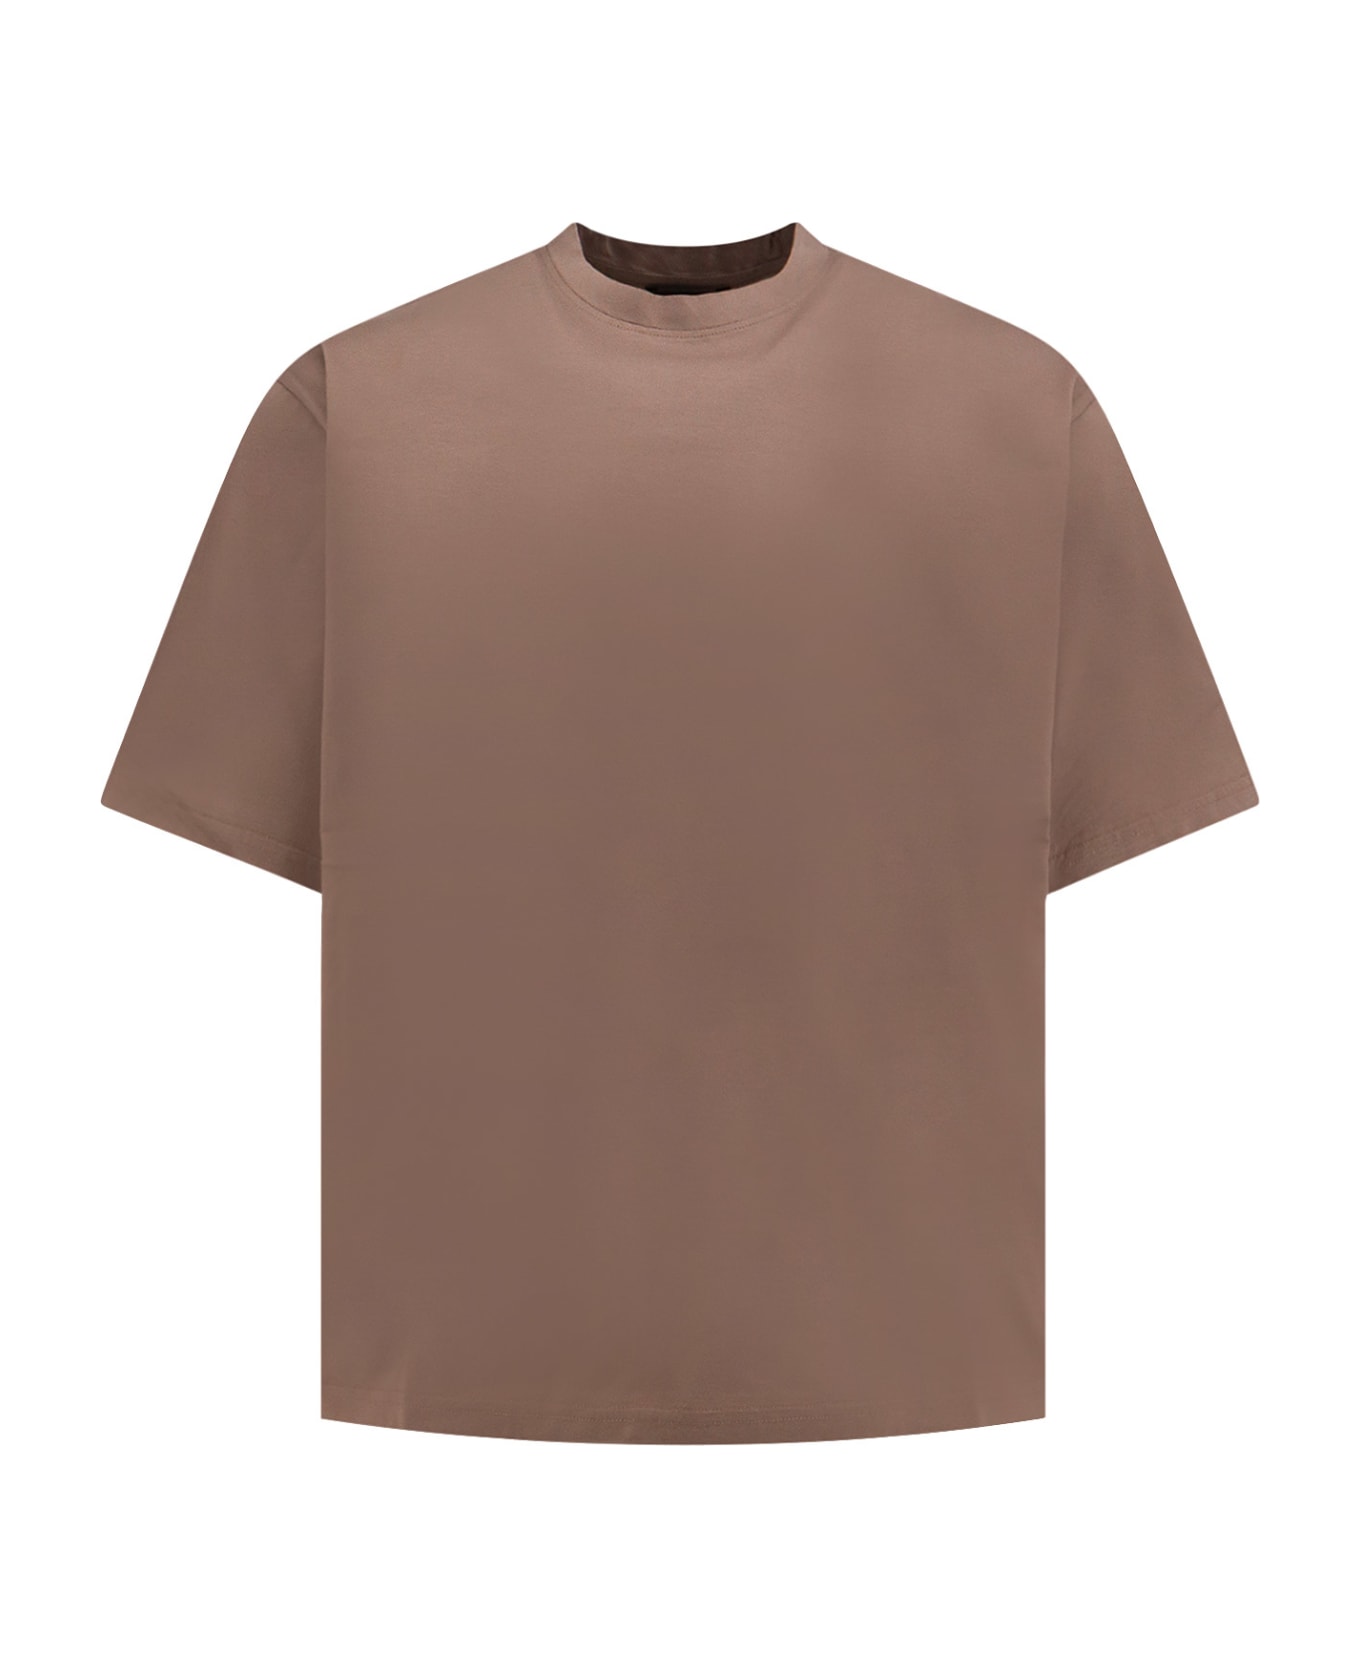 Hevò T-shirt - Brown